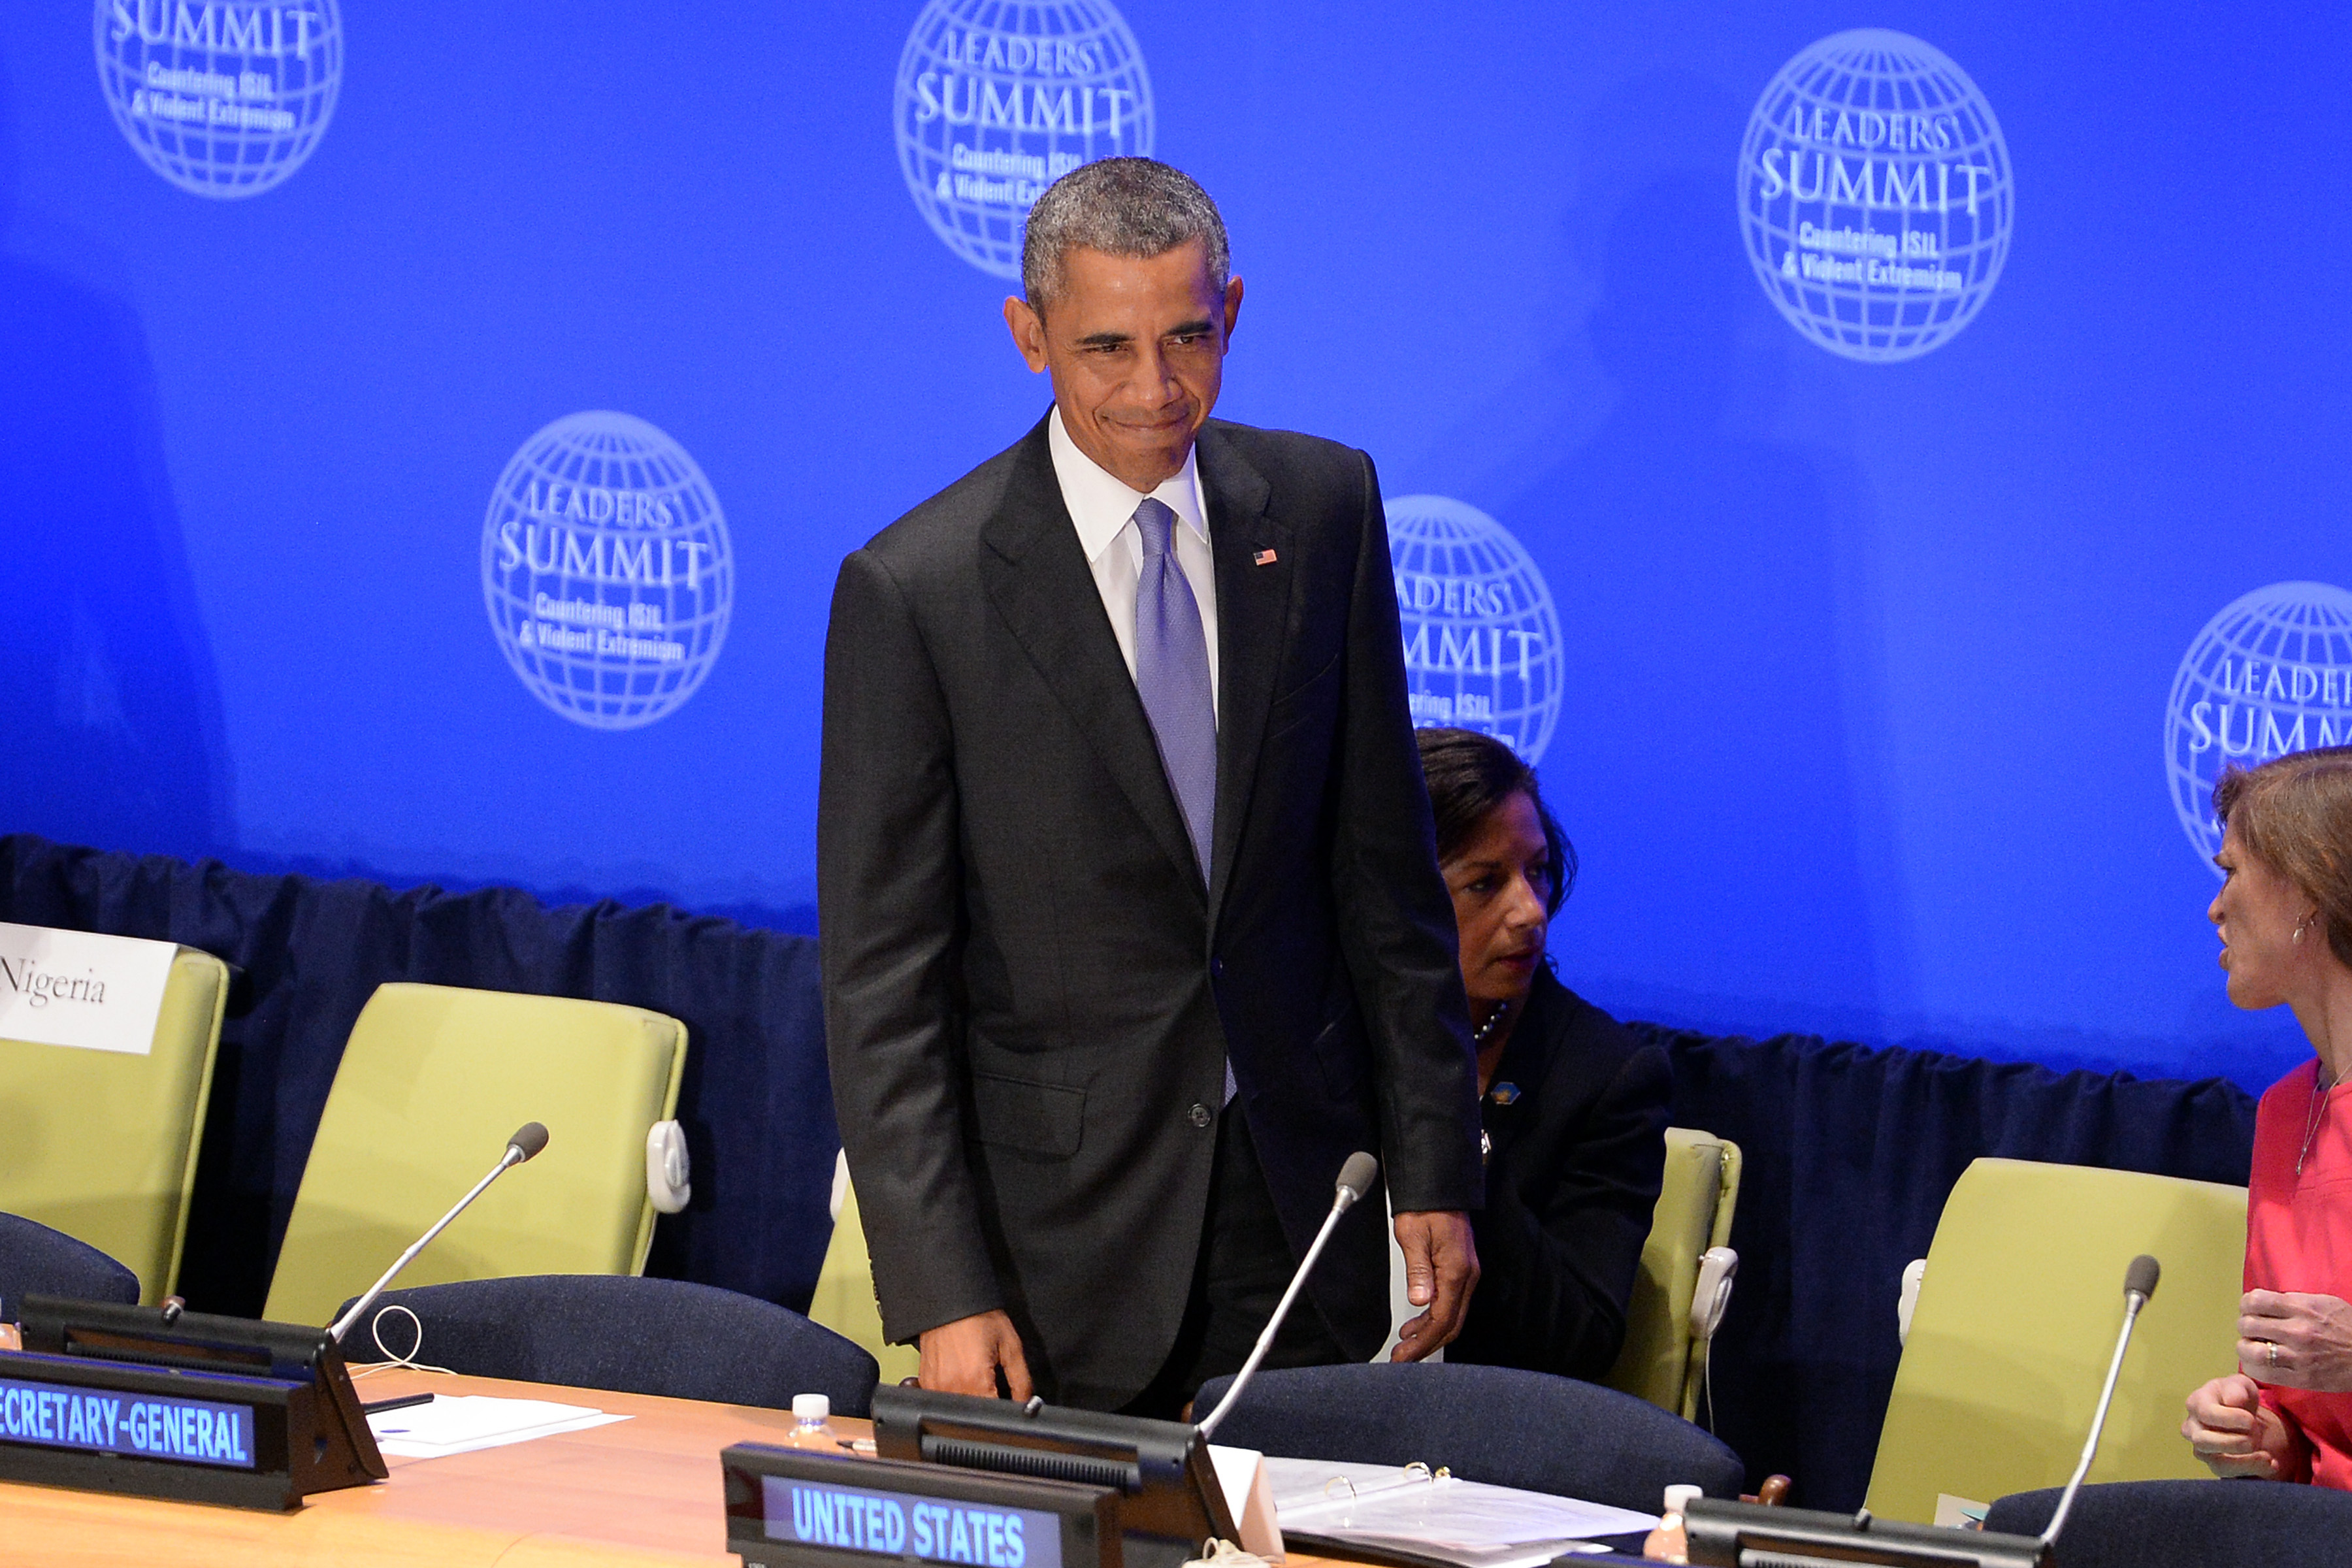 Obama: „Ich führe die größte Streitmacht der Erde und werde nicht zögern, sie einzusetzen.“